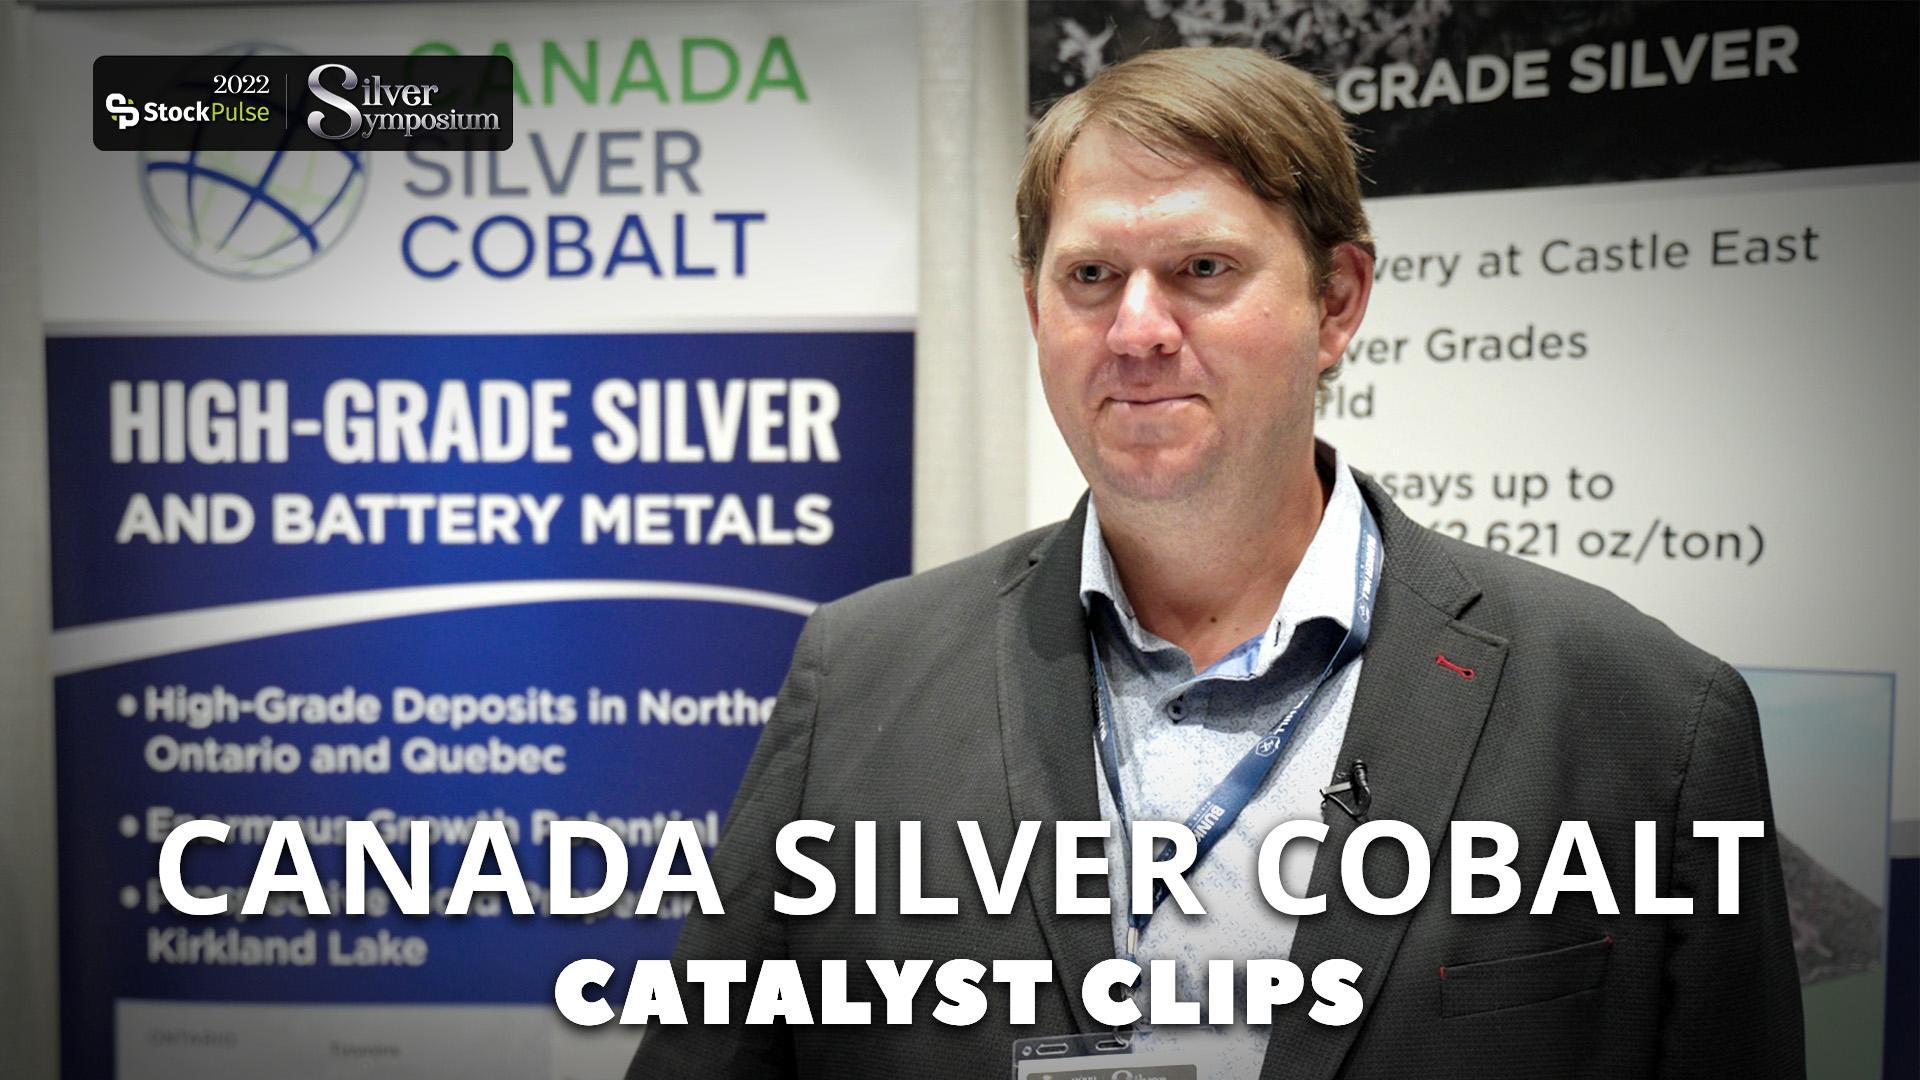 Catalyst Clips | Matthew Halliday of Canada Silver Cobalt